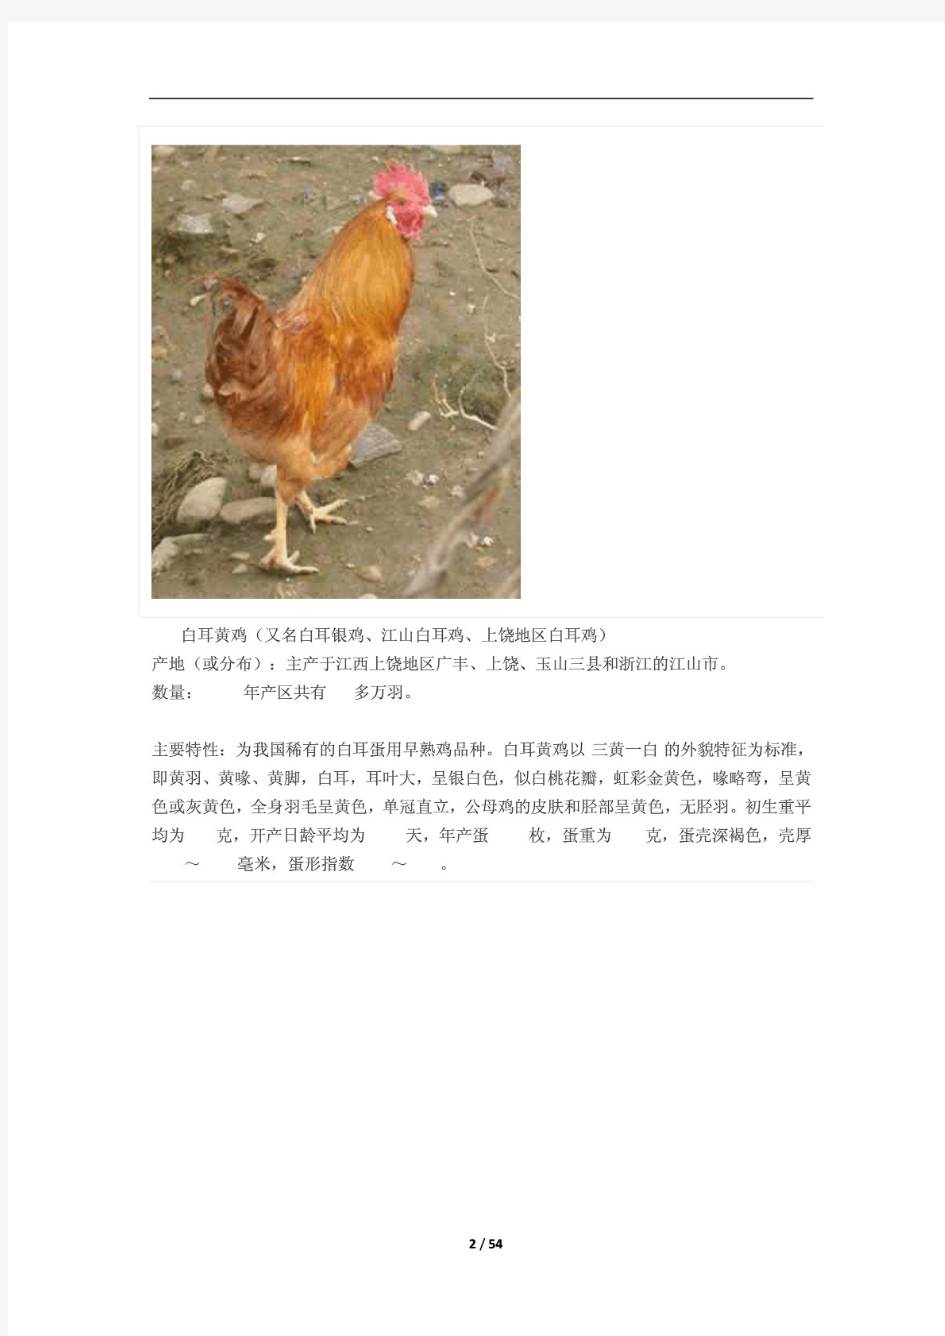 中国最全的鸡的种类资料整理